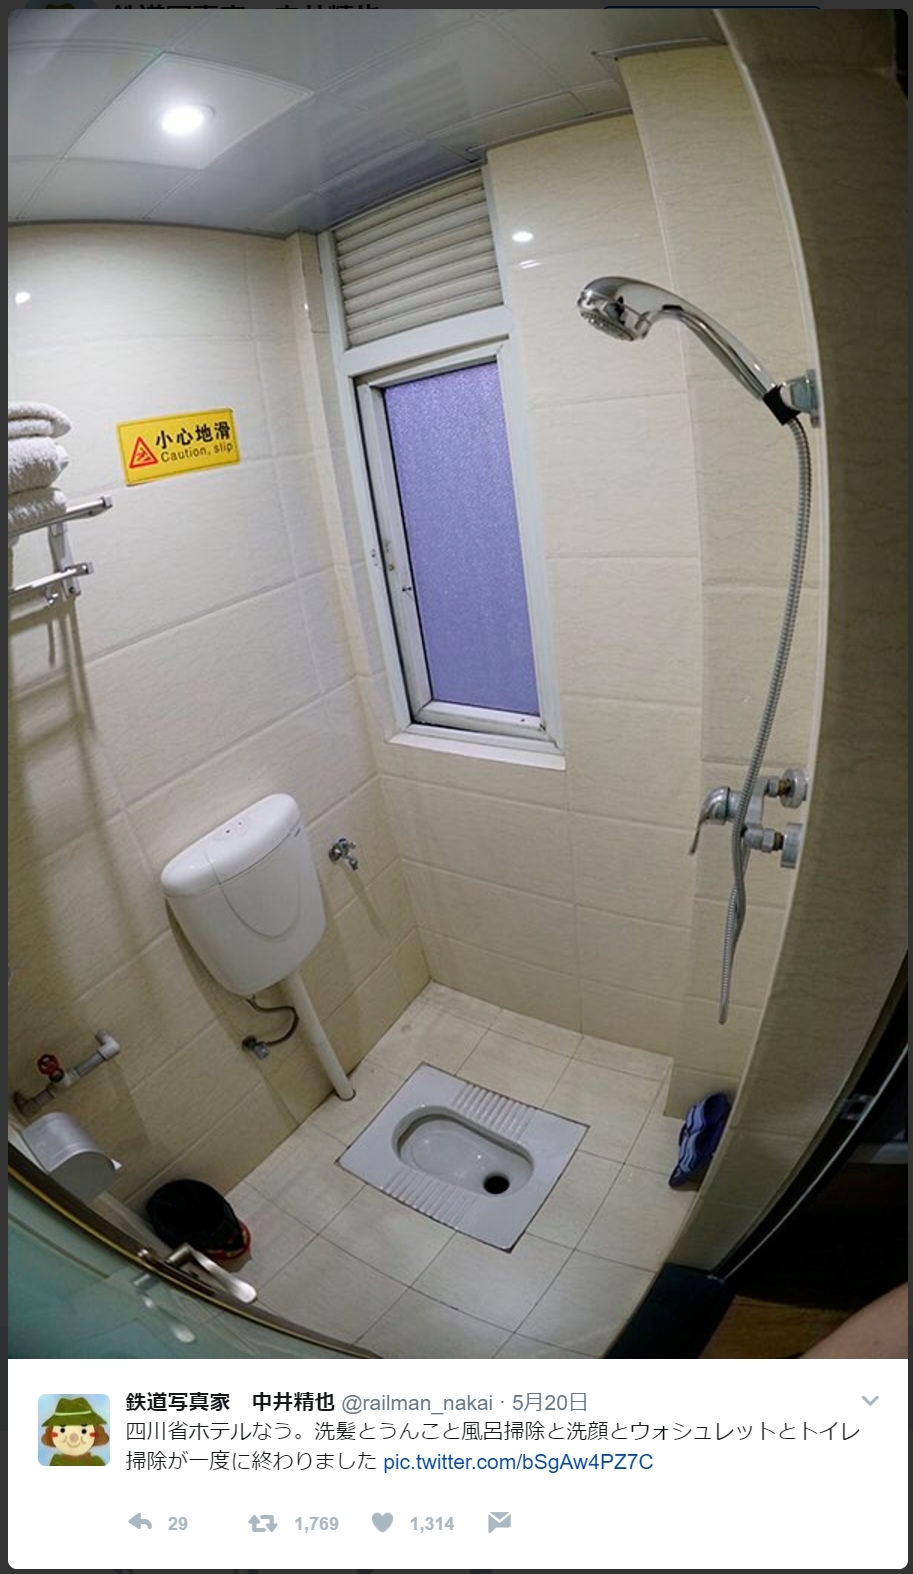 中国ホテルの合理的すぎるトイレが話題 →画像 まにゅそく 2chまとめニュース速報VIP